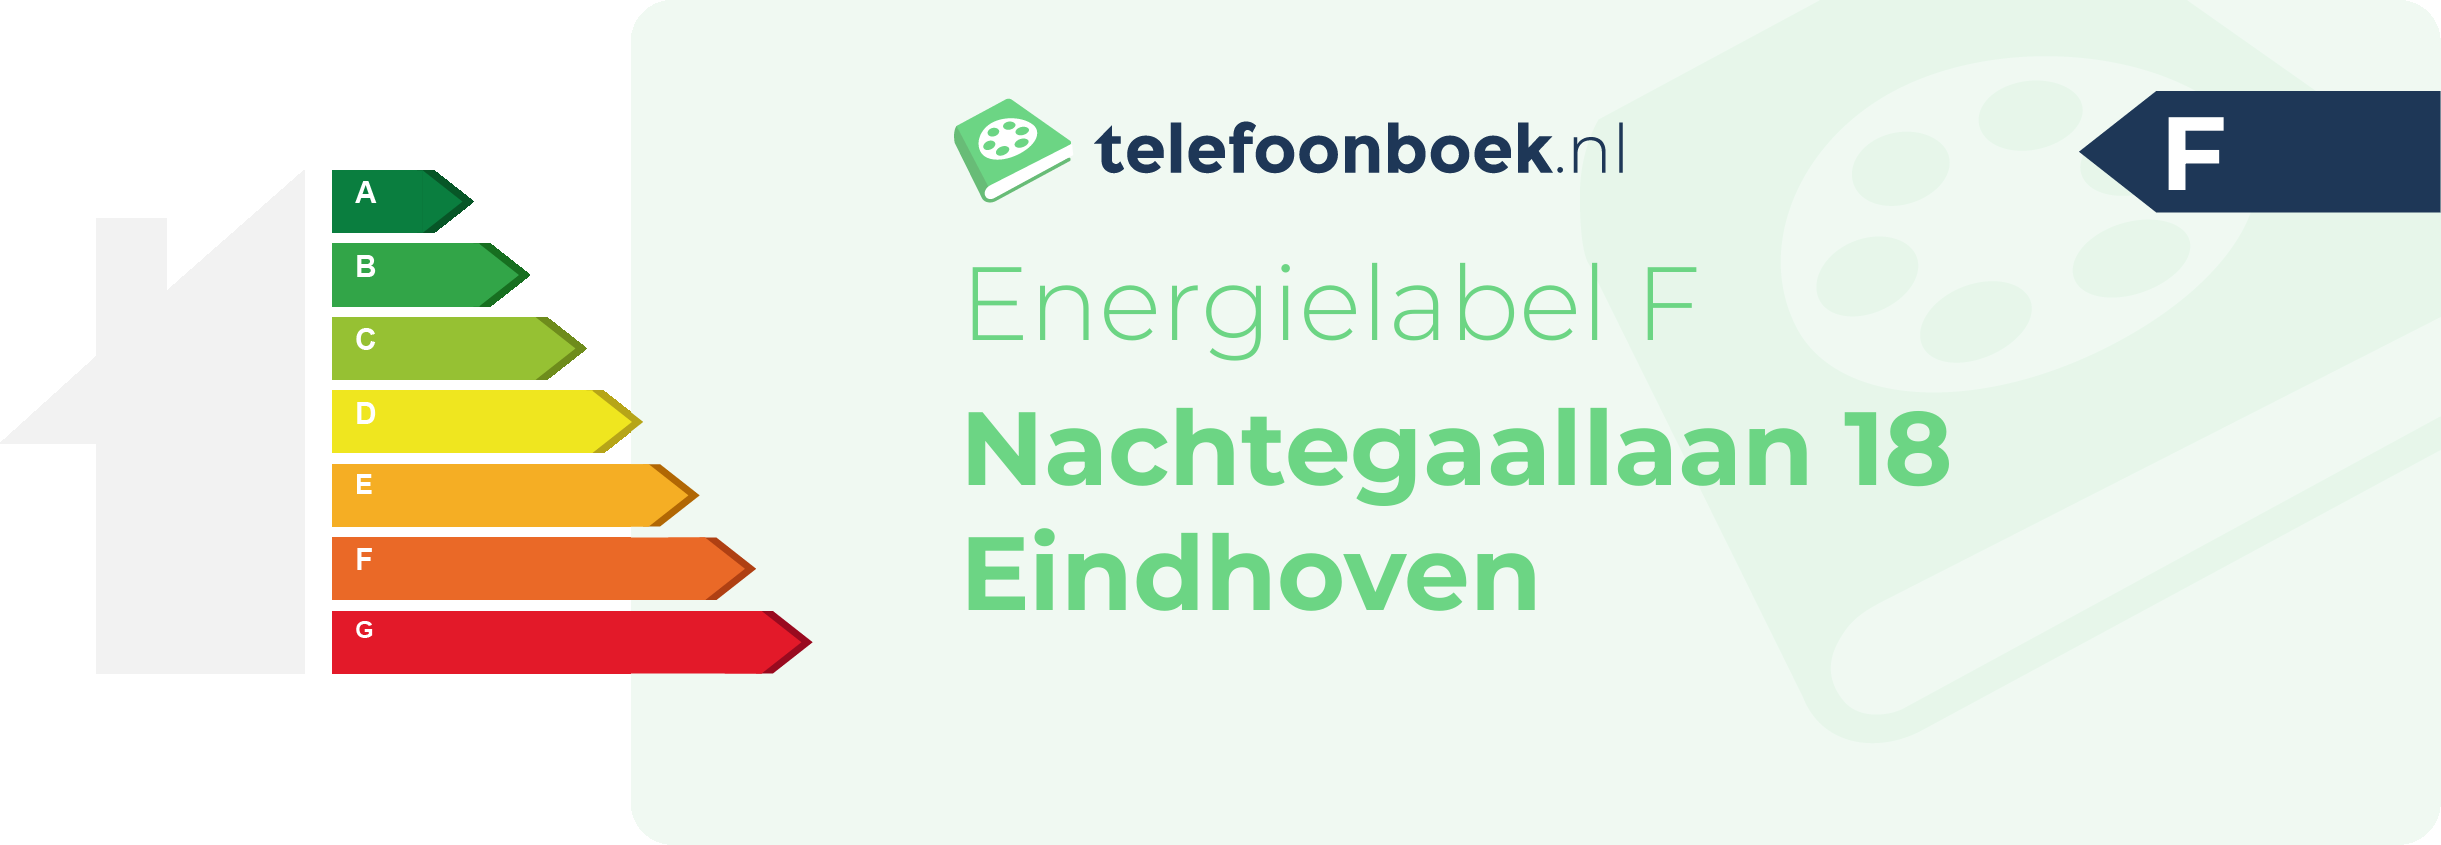 Energielabel Nachtegaallaan 18 Eindhoven